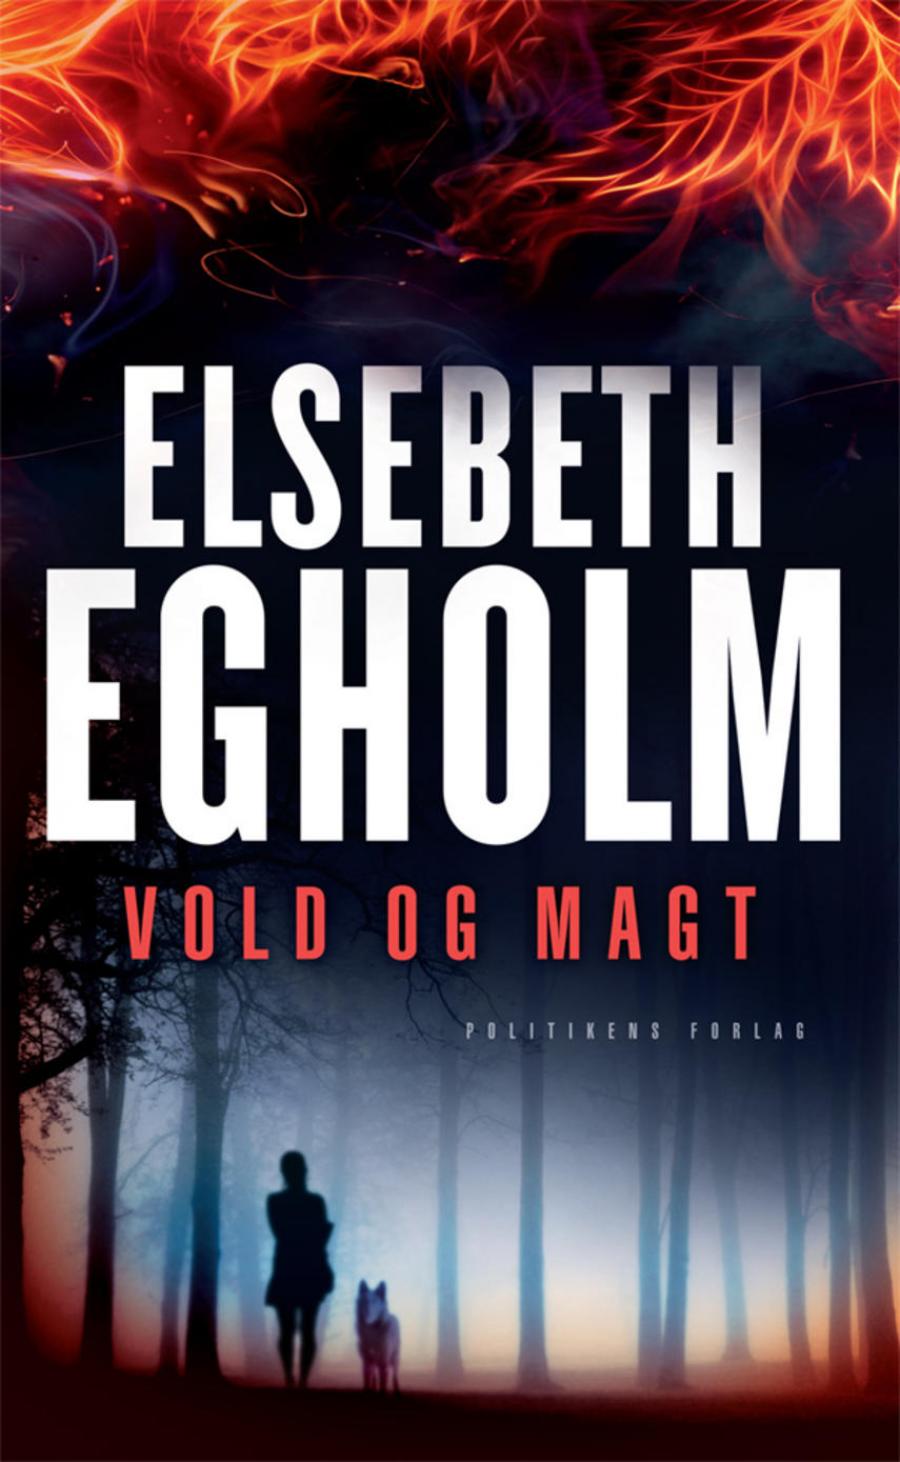 Vold og magt af Elsebeth Egholm